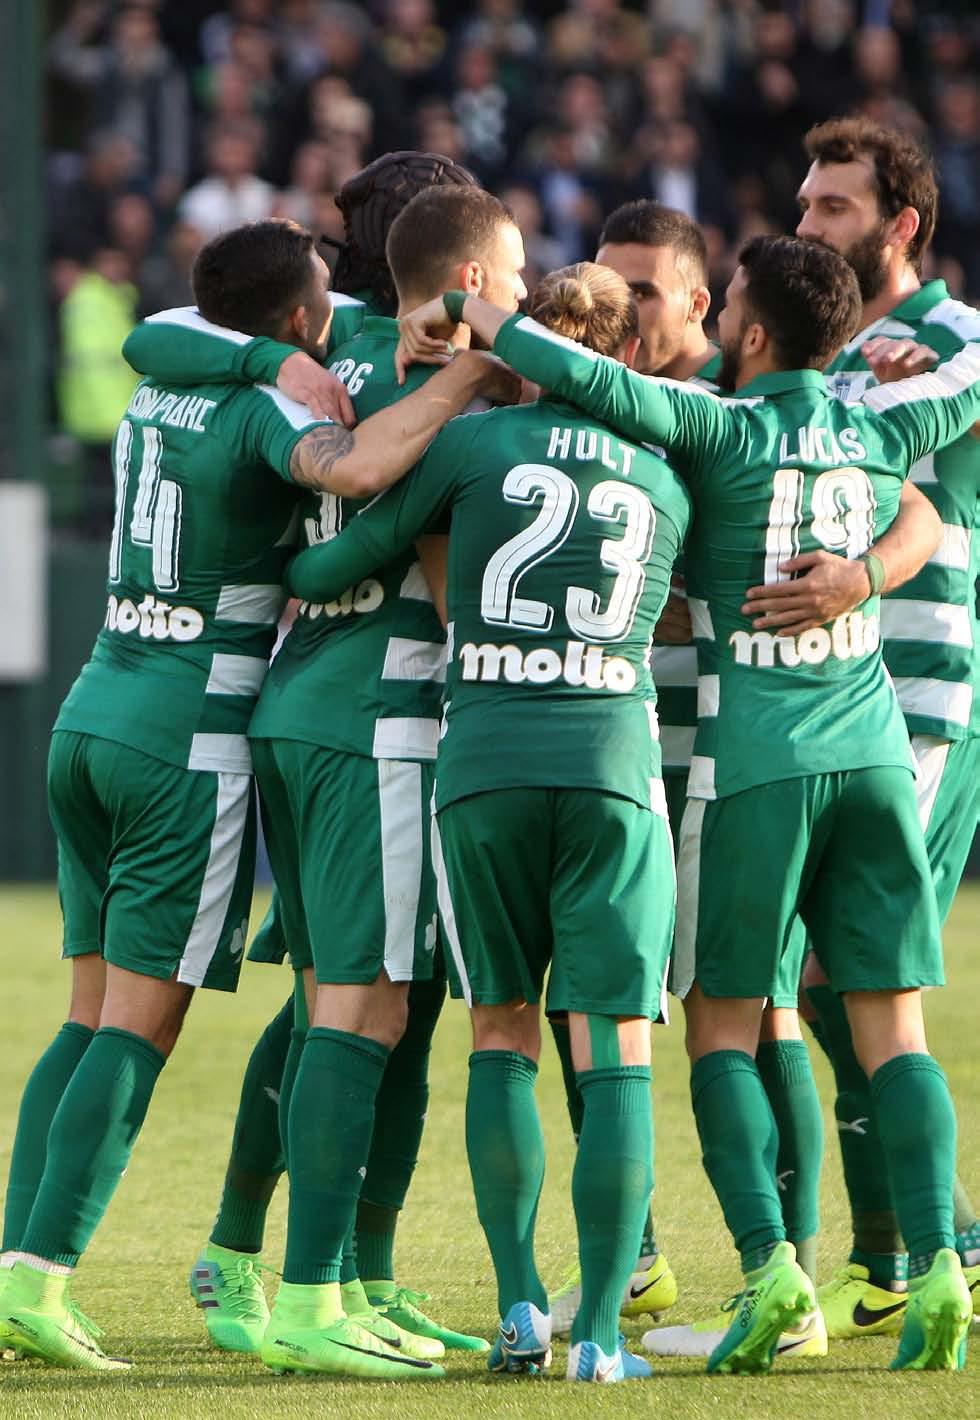 πρωταθλήματος με τουλάχιστον 1 γκολ οι «πράσινοι» αξιοποίησαν την ανωτερότητά τους και έκαμψαν την αντίσταση του Πανιωνίου κερδίζοντας με 1-0, στον αγώνα που πραγματοποιήθηκε στο «Απ.